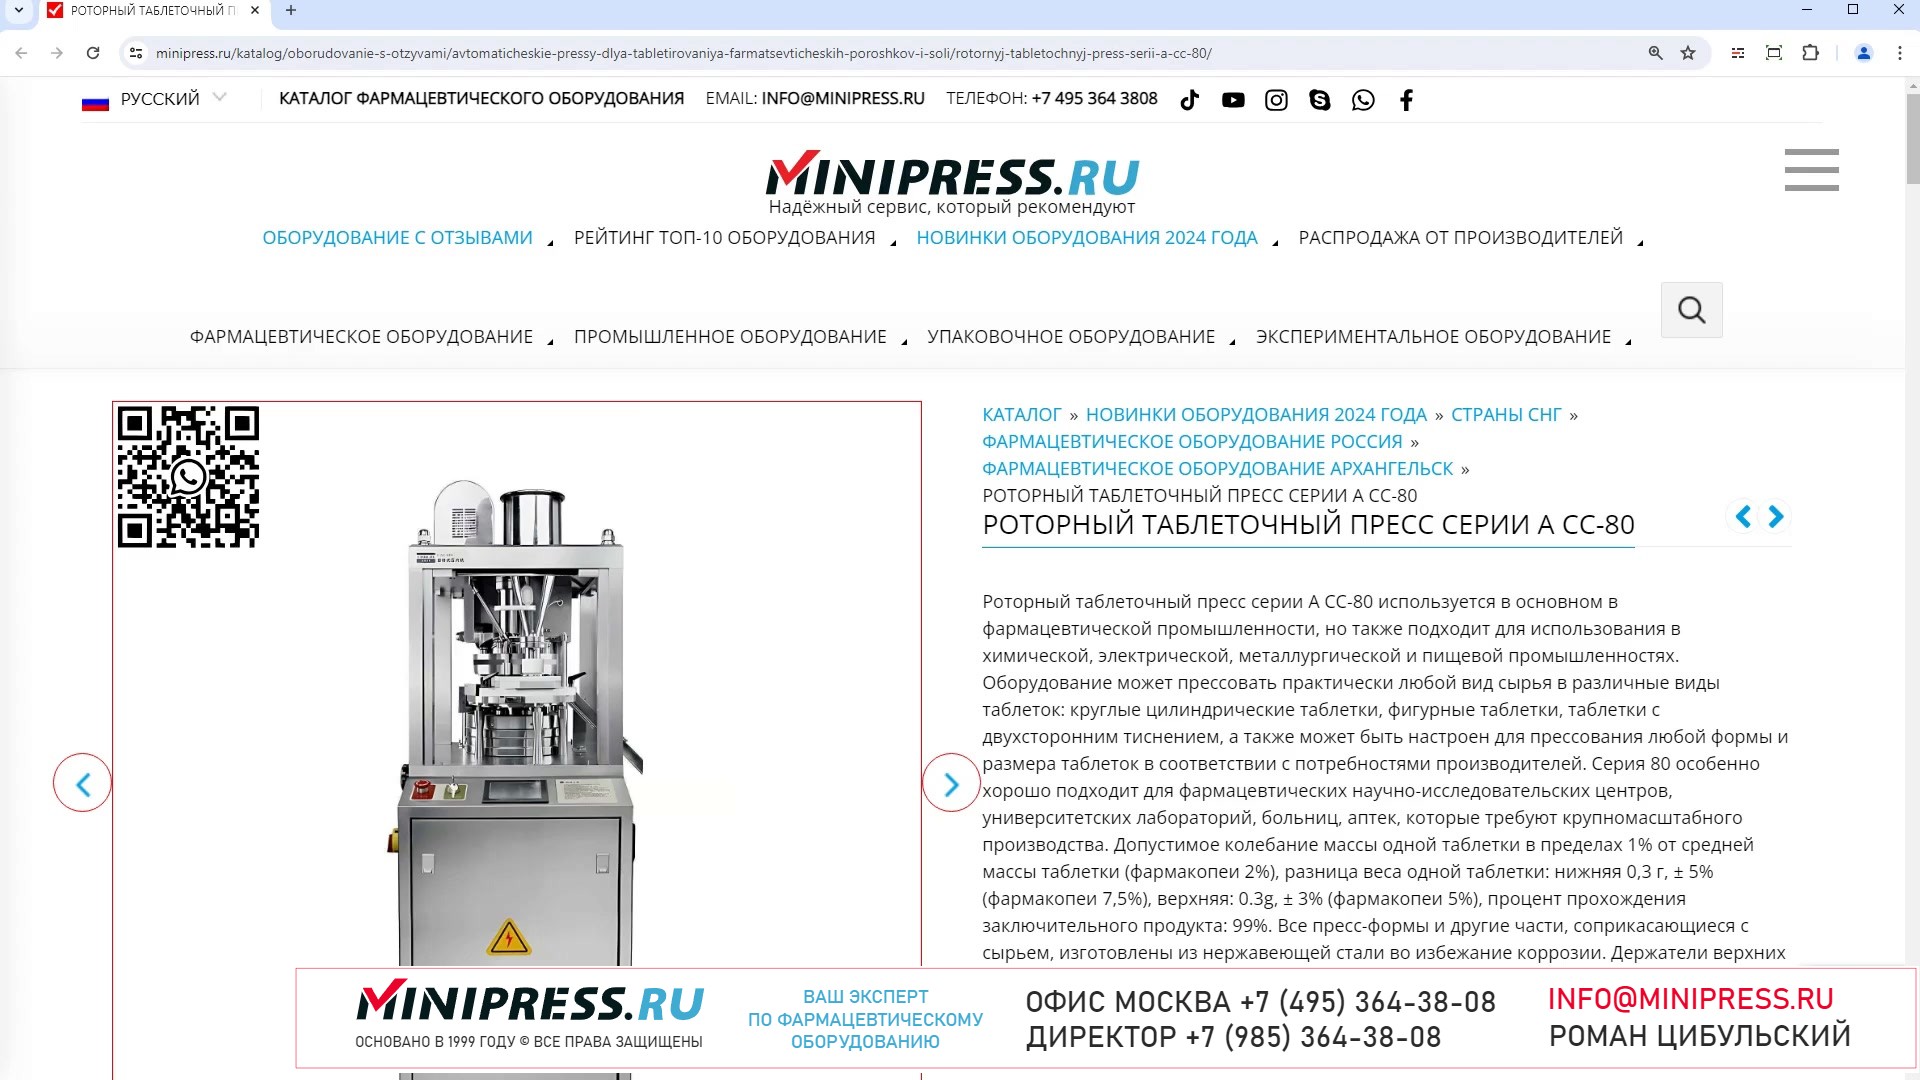 Minipress.ru Роторный таблеточный пресс серии А CC-80